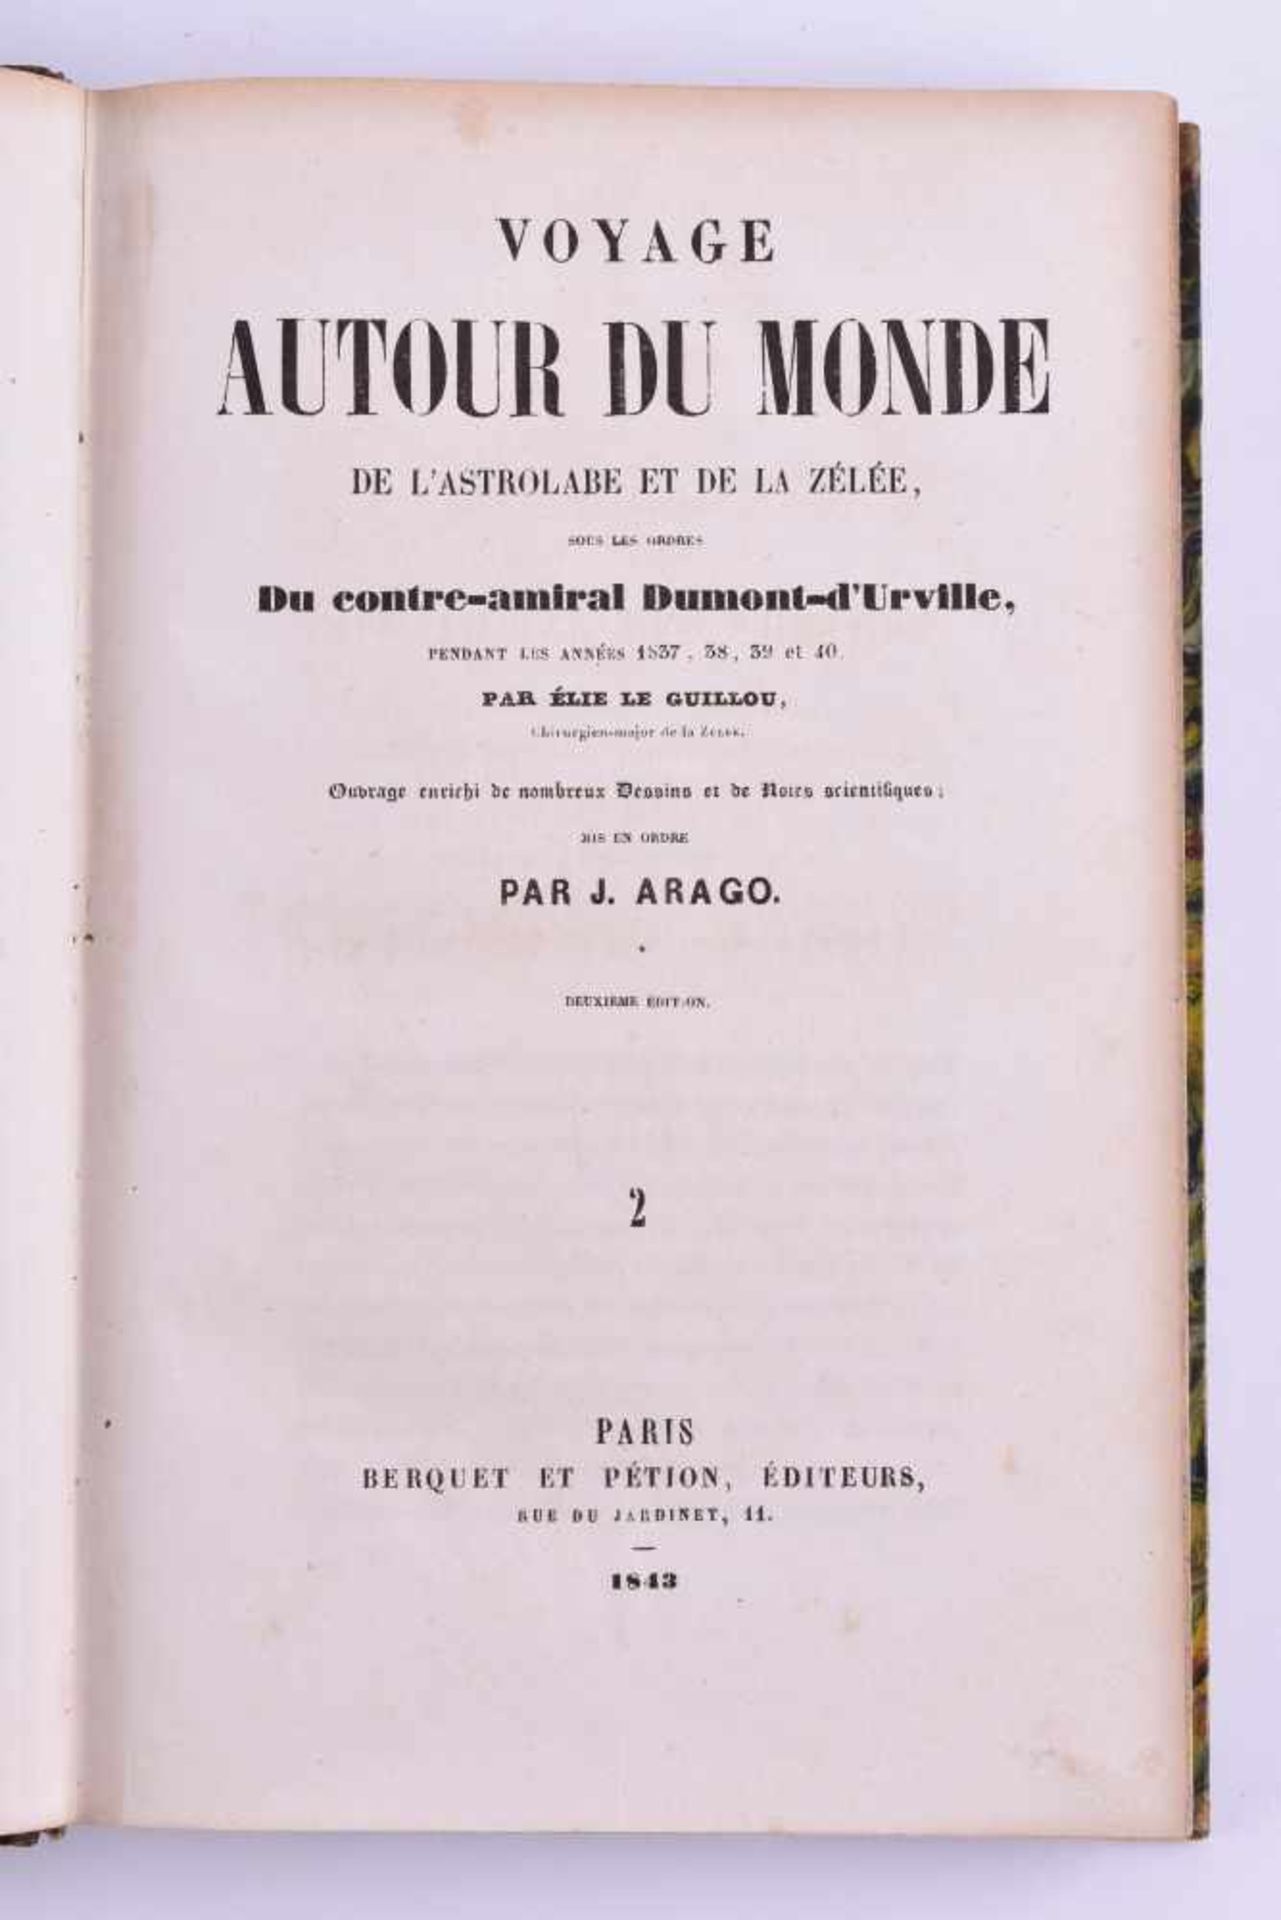 Voyage autour du monde de l'astrolabe D'Urville, Le guillou 1843Der Guillou Elie bereist im - Image 3 of 5